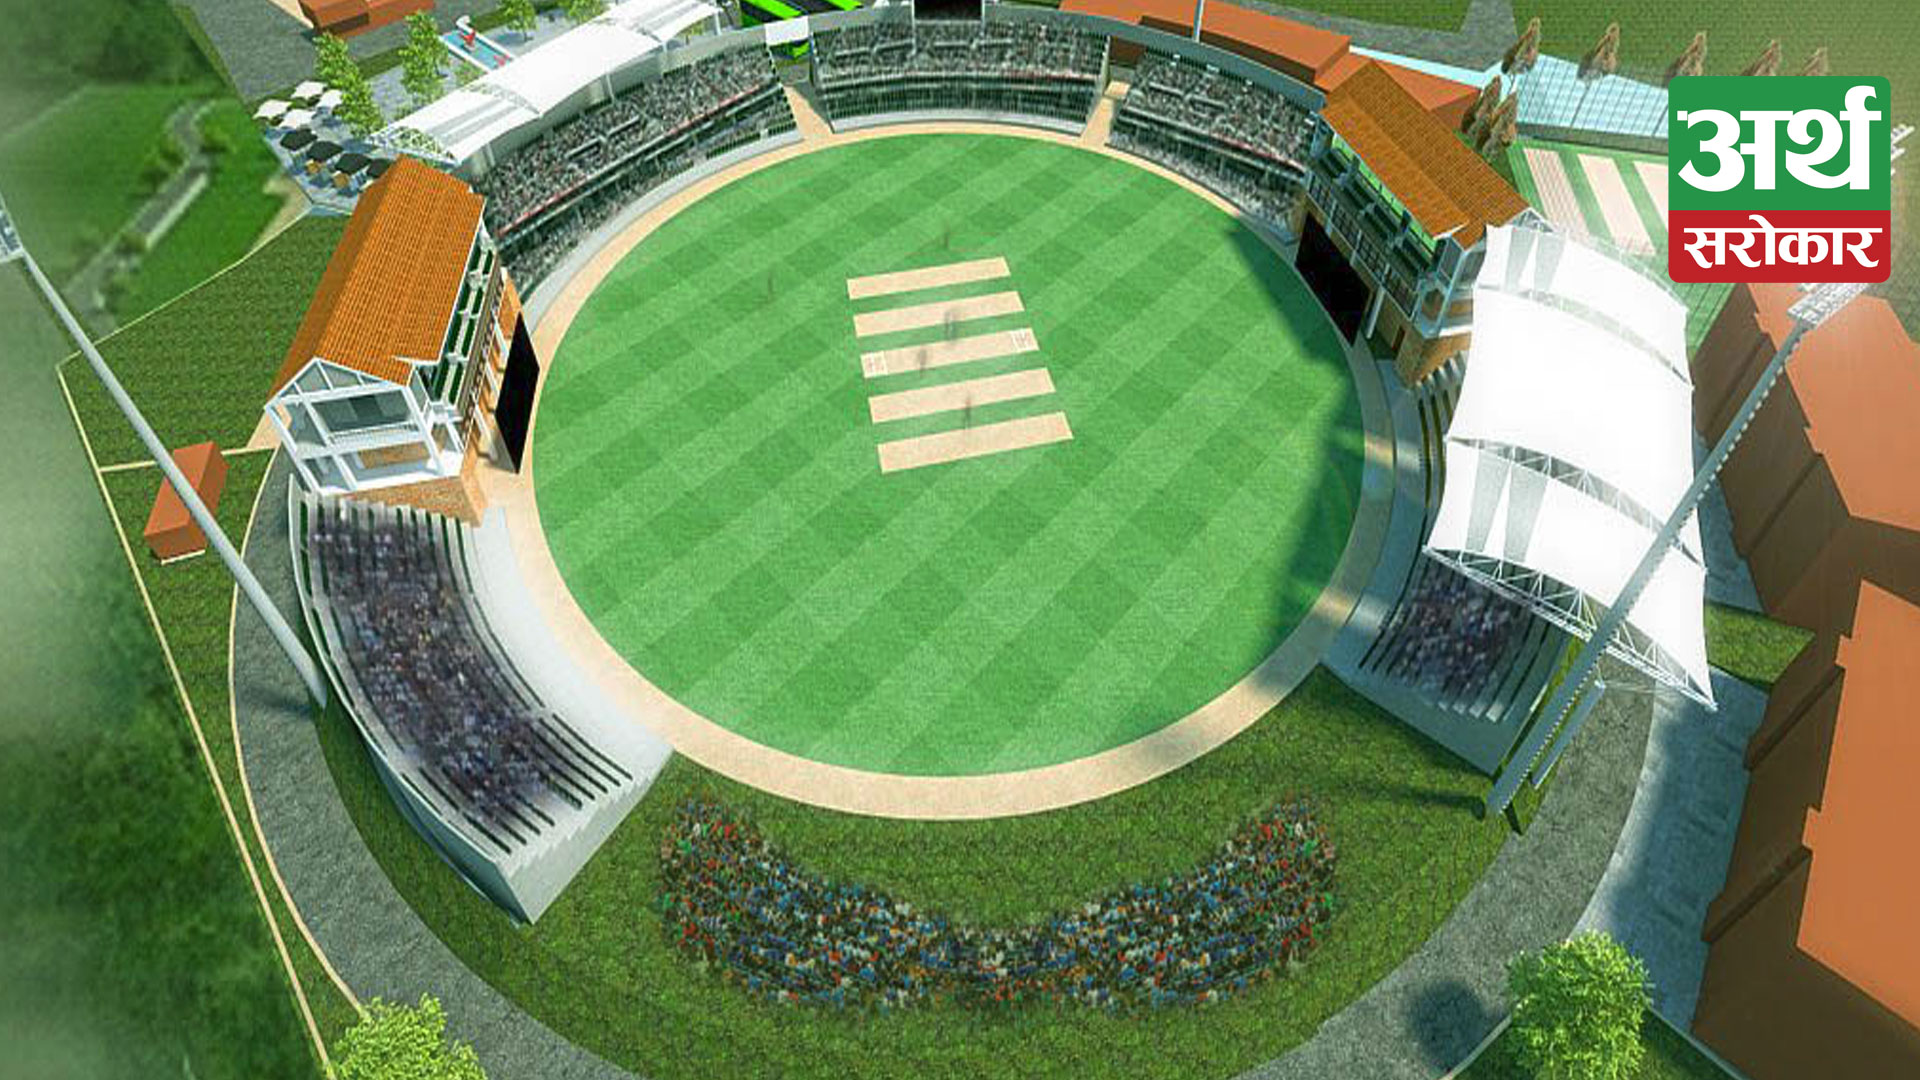 ‘ड्रिम फाप्ला’अभियानले सार्थकता पाउँदै, अन्तर्राष्ट्रिय क्रिकेट मैदानका रुपमा विकास गर्ने लक्ष्य